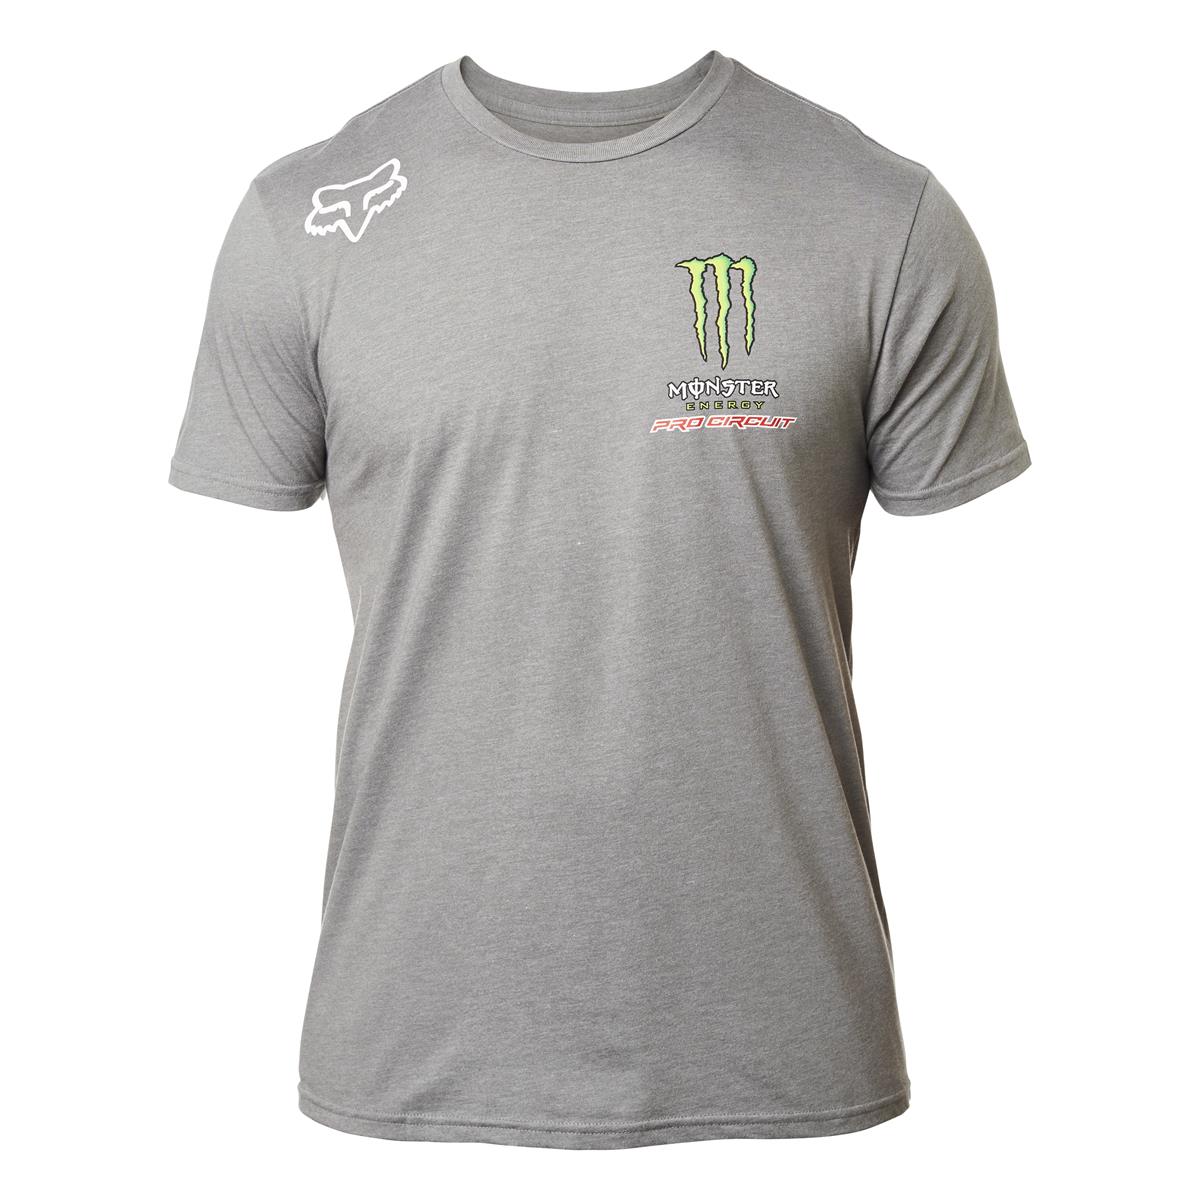 Fox T-Shirt Monster Pro Circuit Dunkelgrau meliert